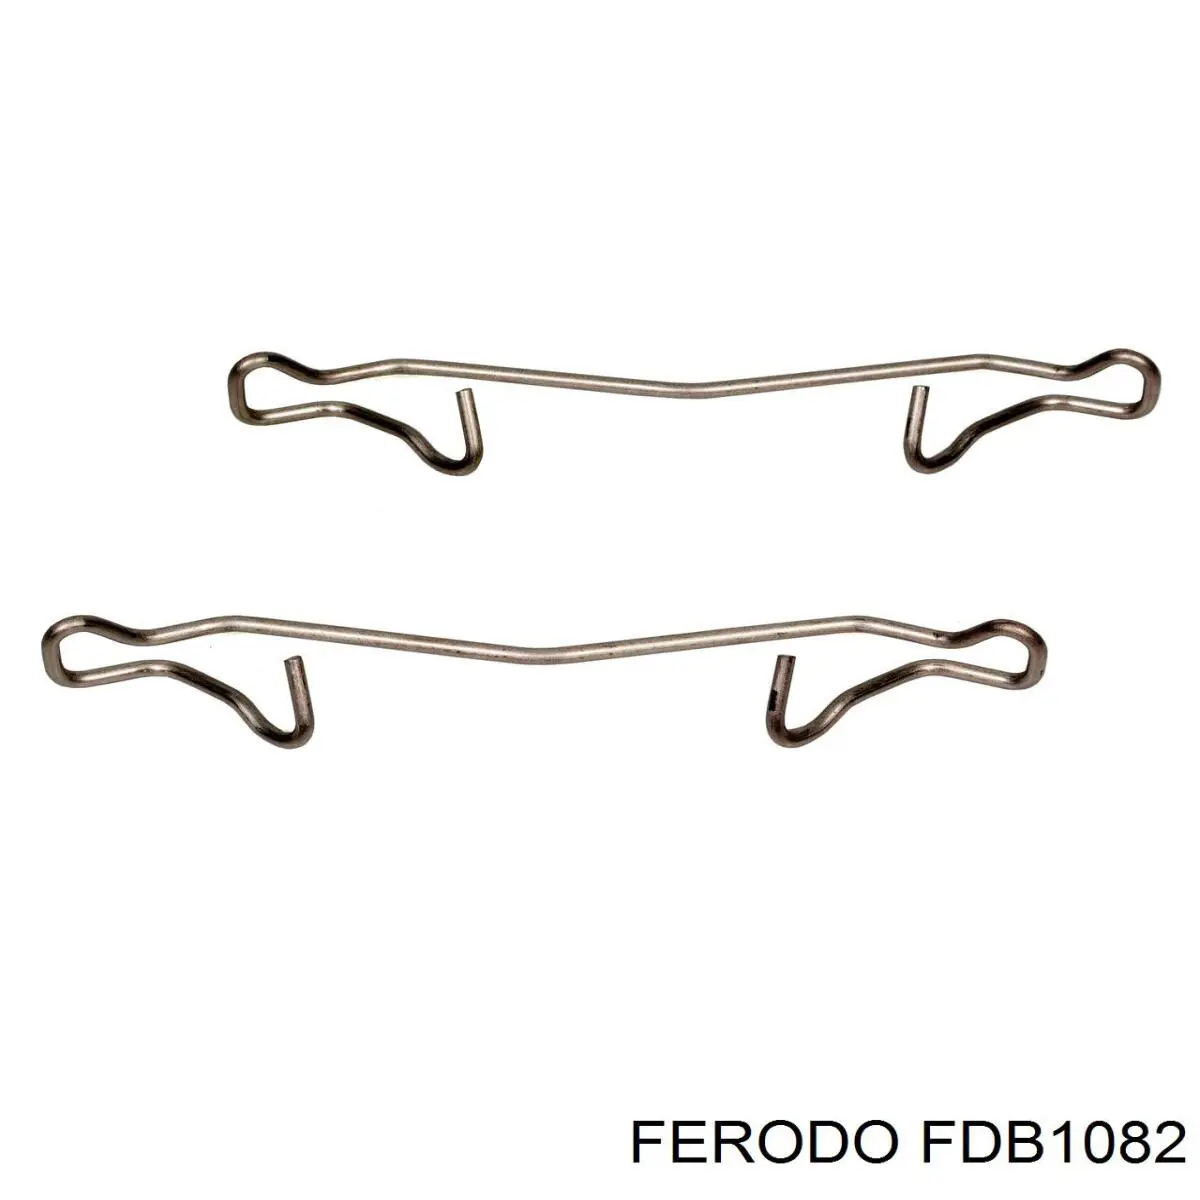 FDB1082 Ferodo колодки тормозные передние дисковые